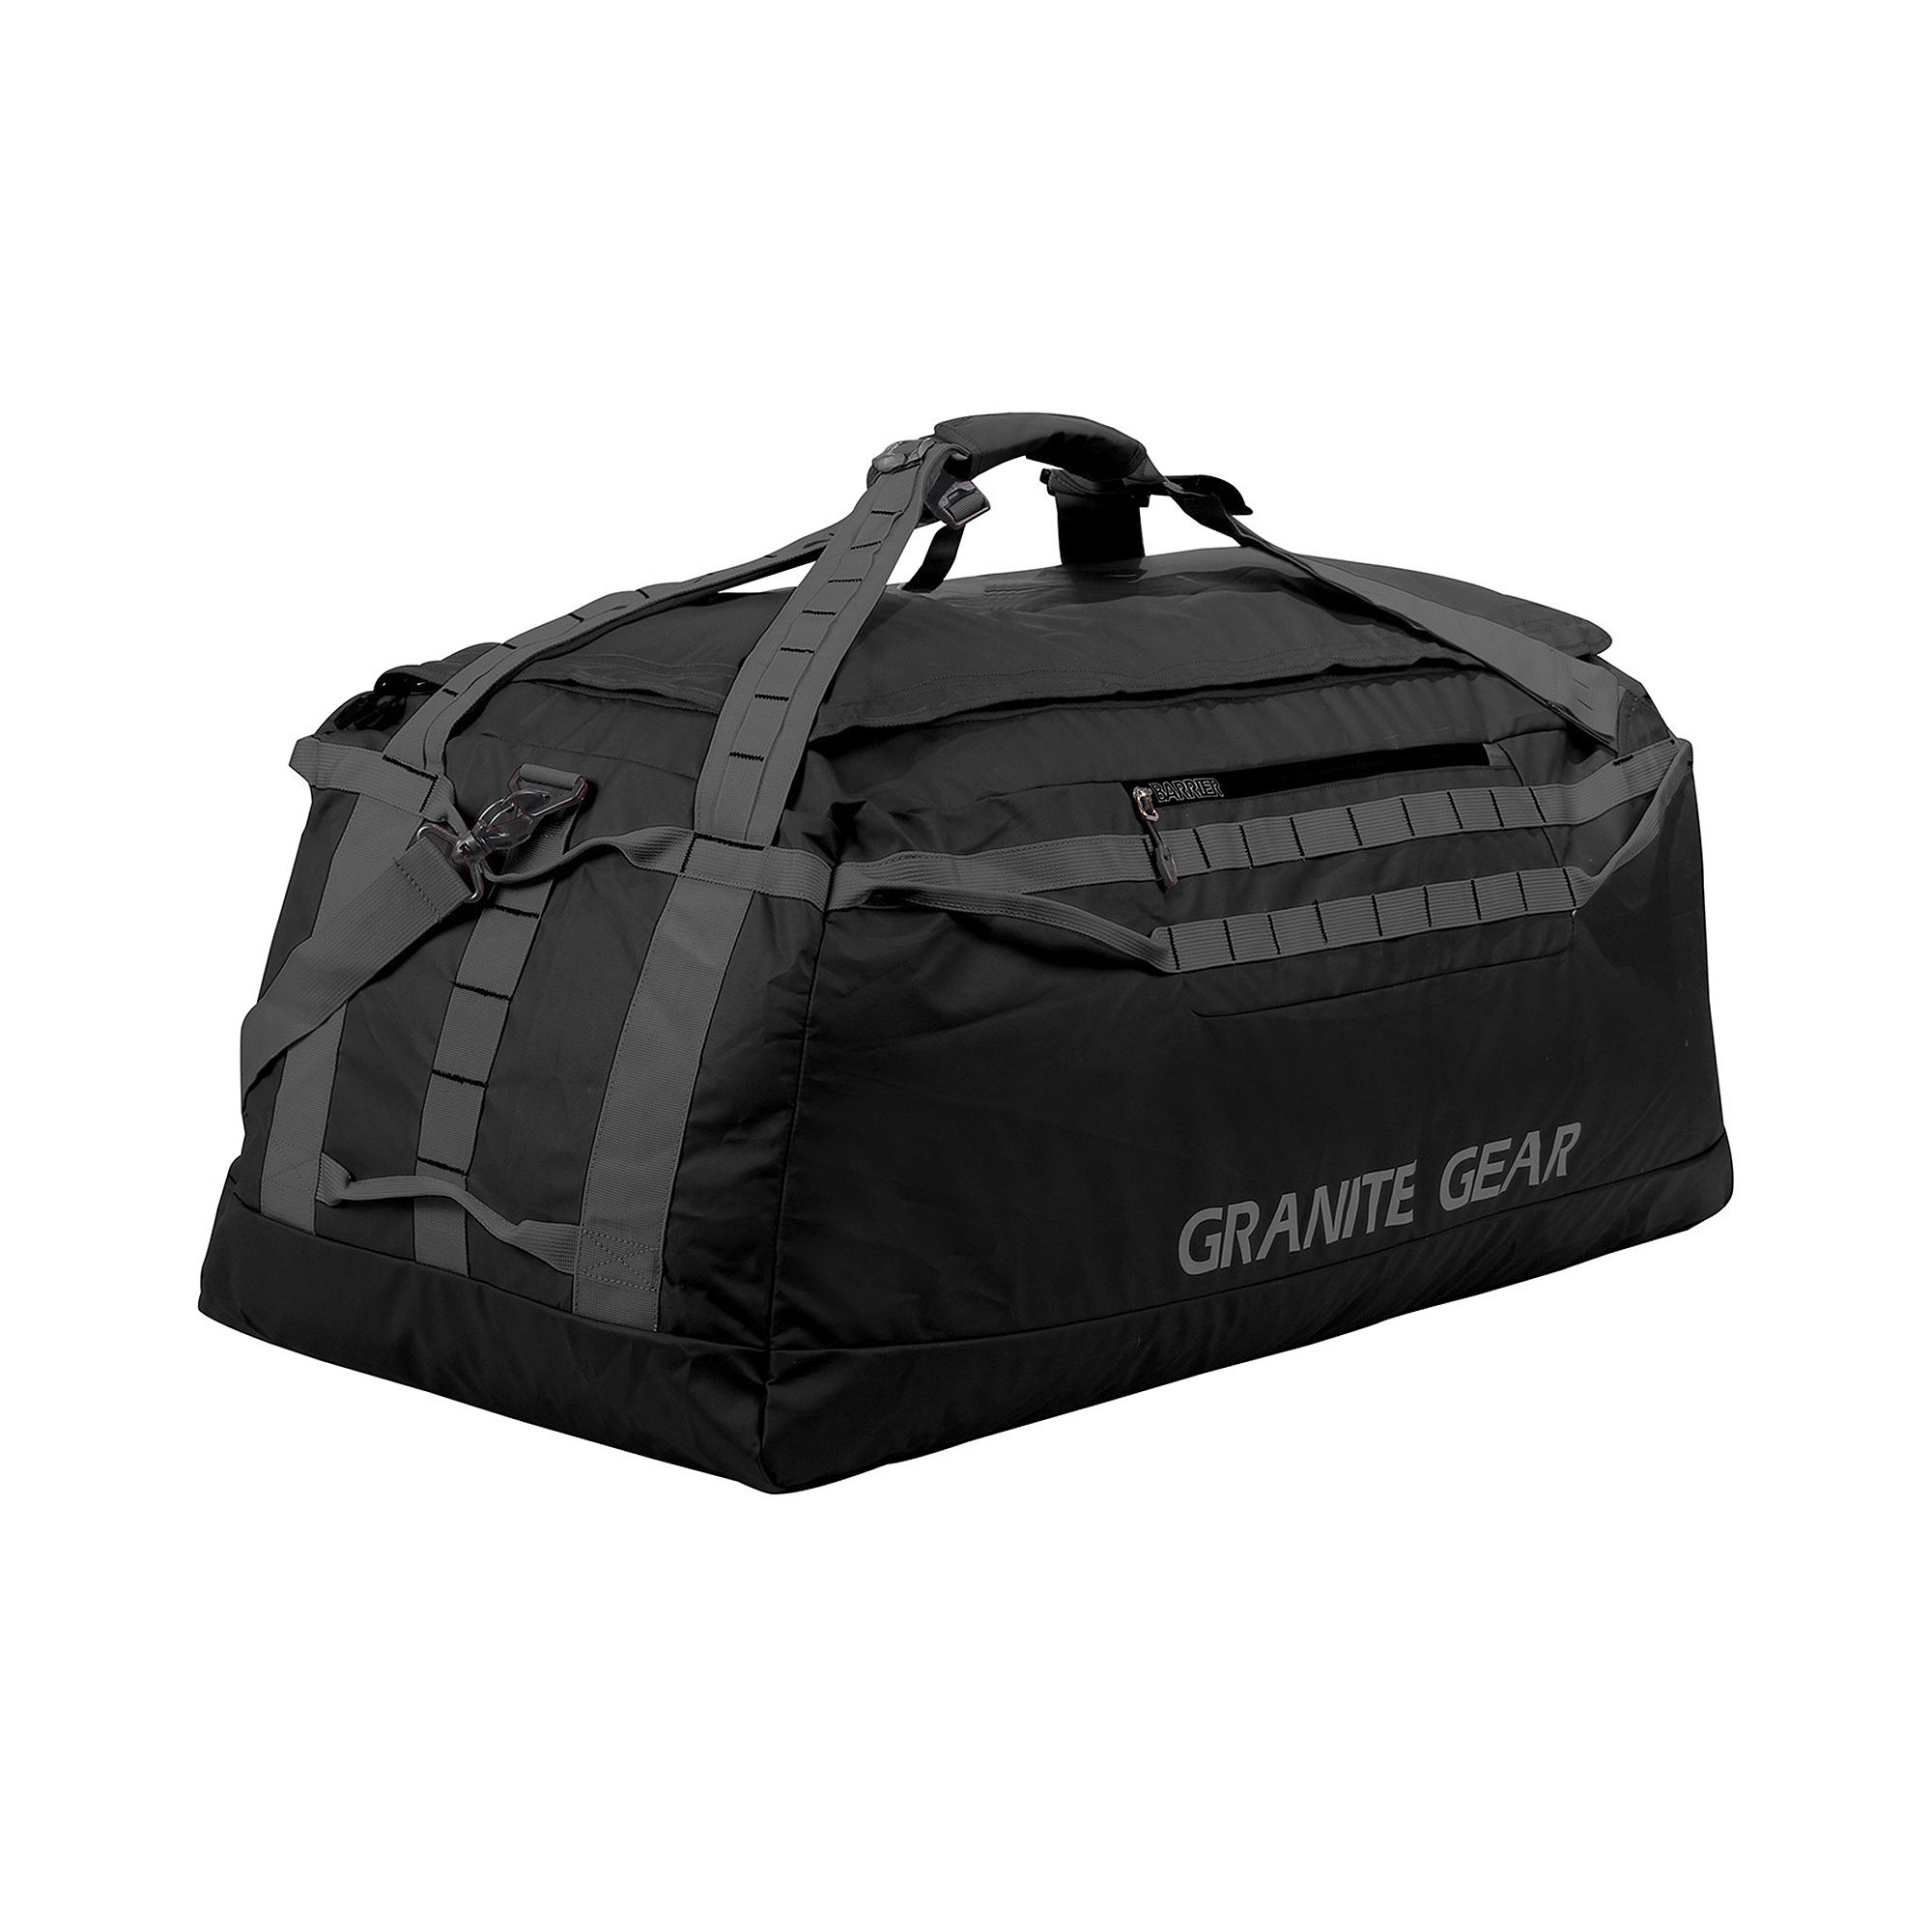 Granite Gear 36" Packable Duffel Bag